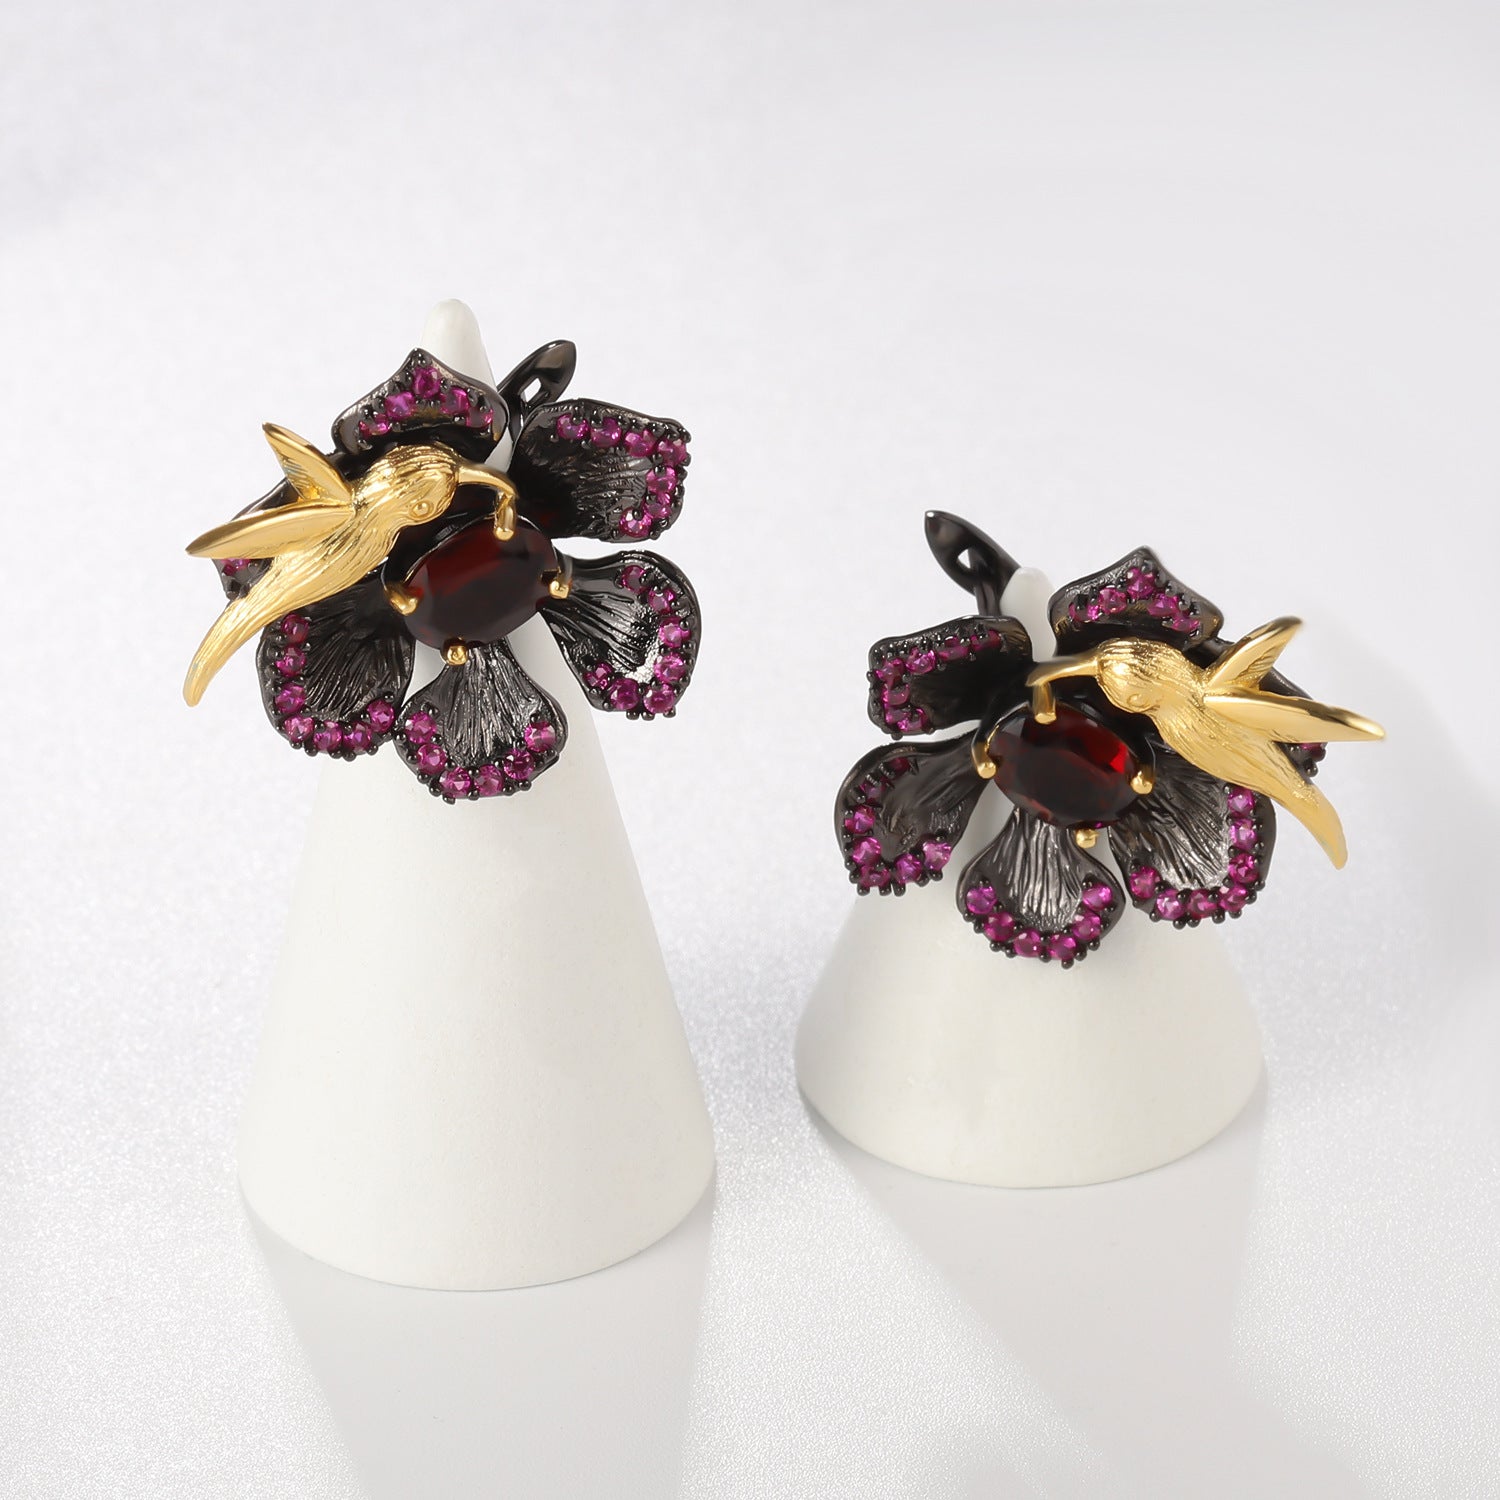 Colourful Gemstones Bird Whispering and Flower Fragrance Design Silver Earrings for Women